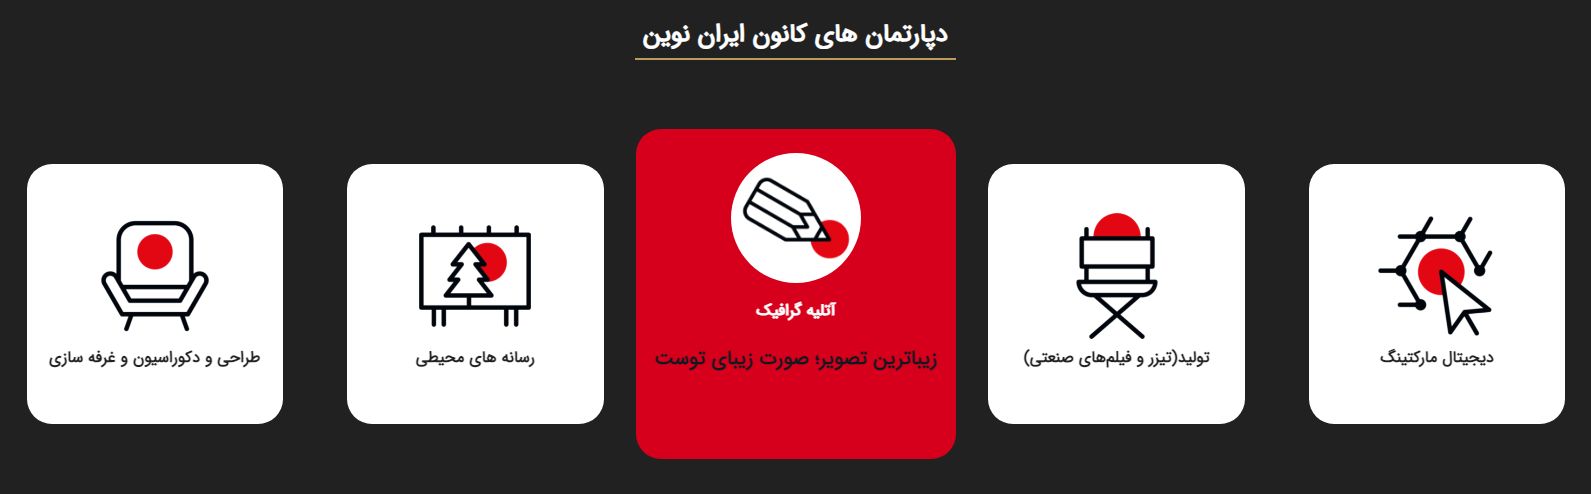 آژانس تبلیغاتی ایران نوین را بهتر بشناسید